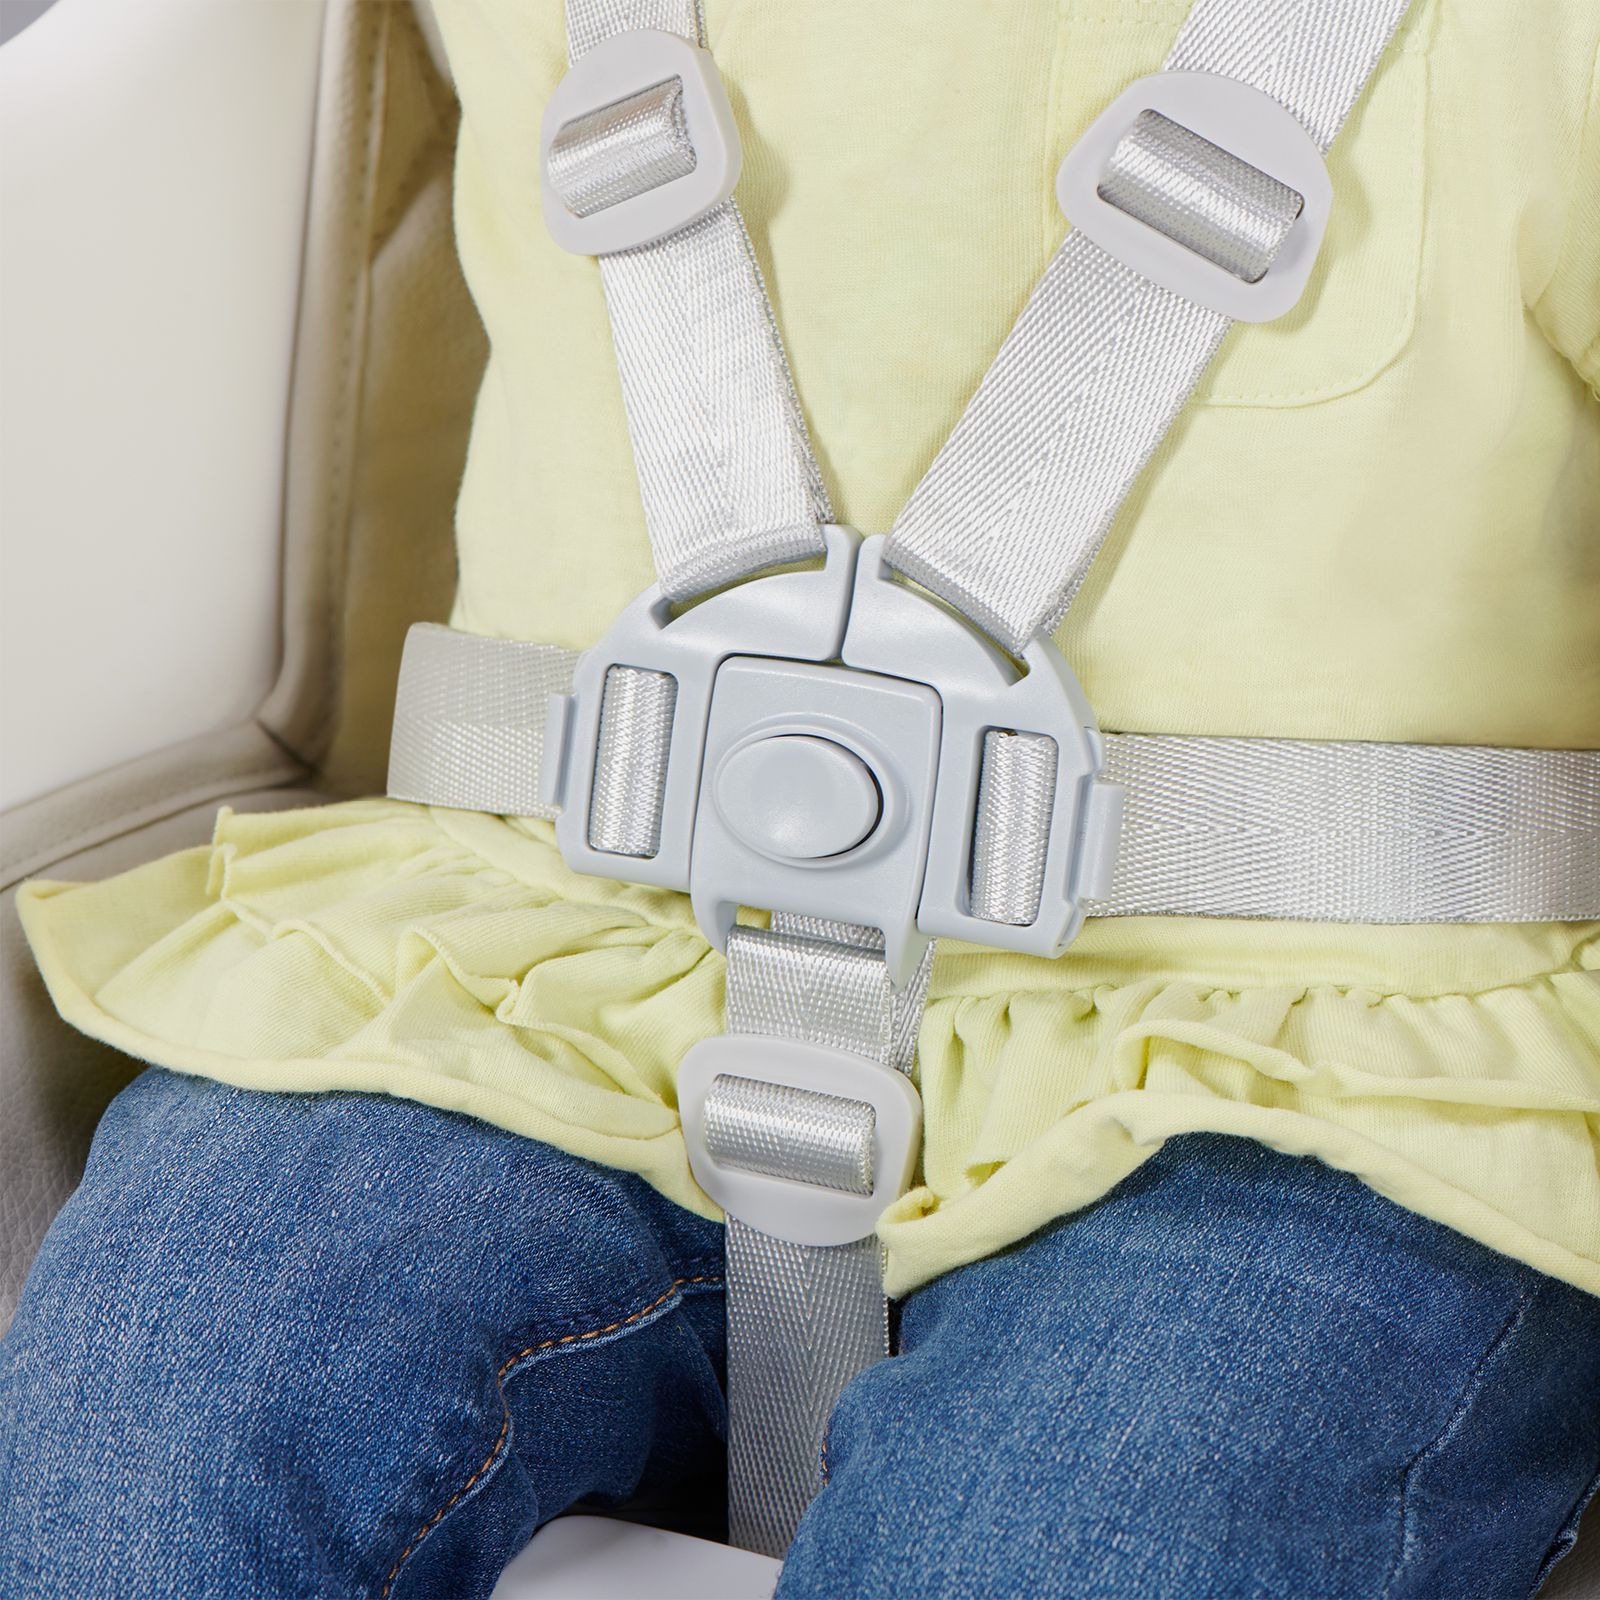 Cinturones de seguridad de 5 puntos
